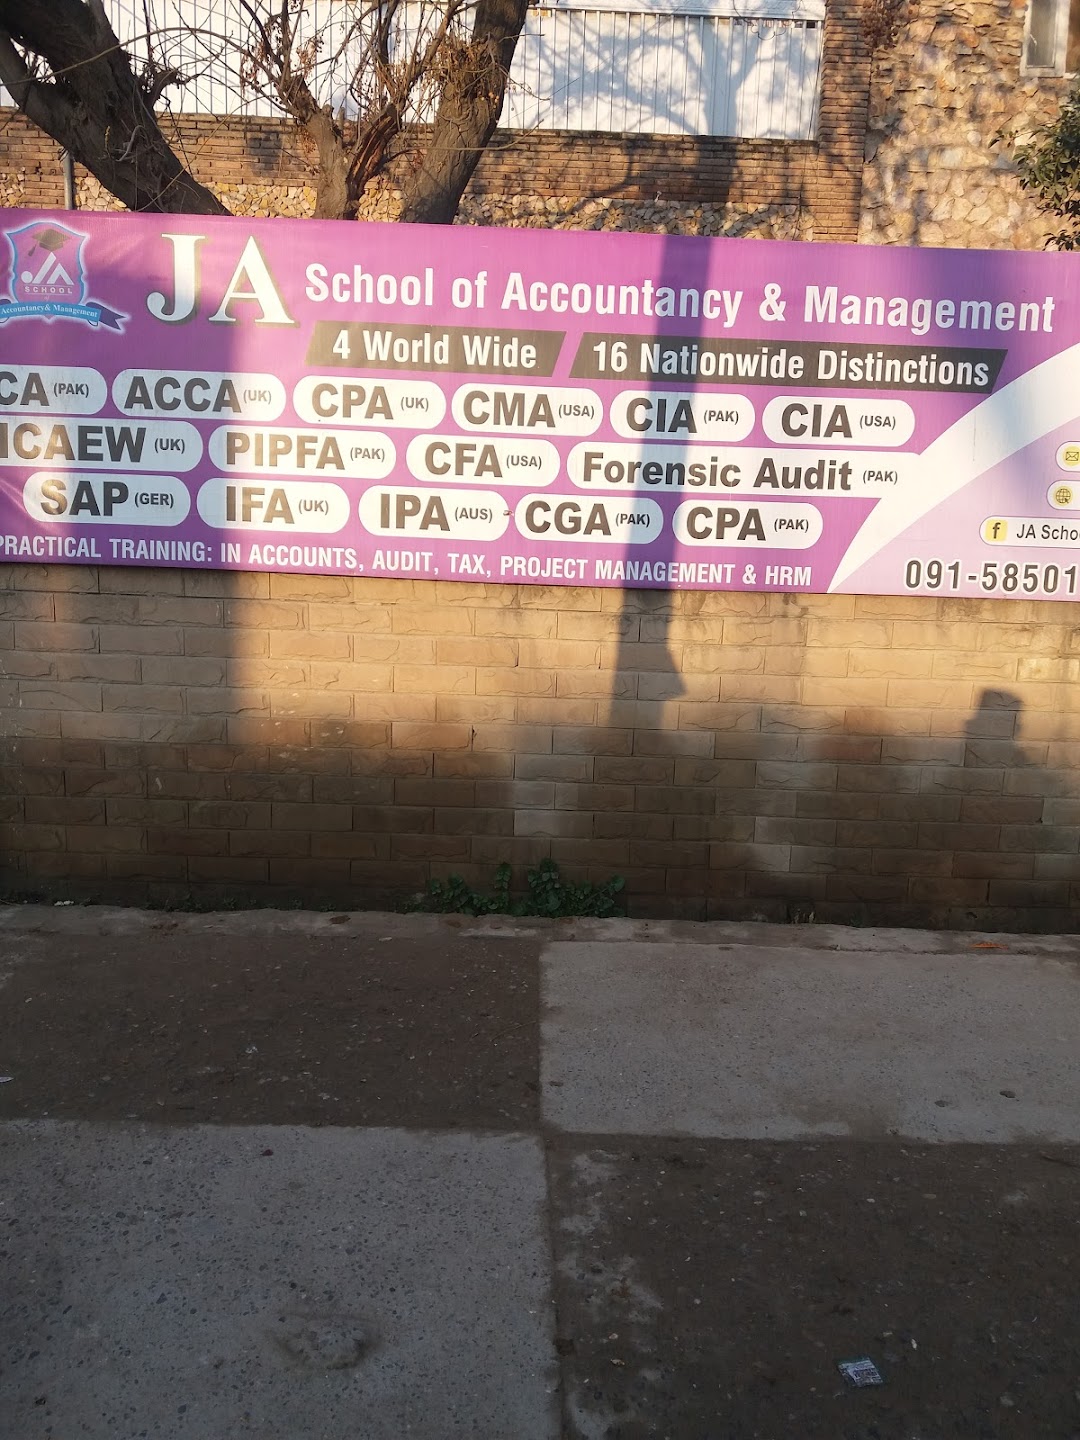 JA School of Accountancy & Management